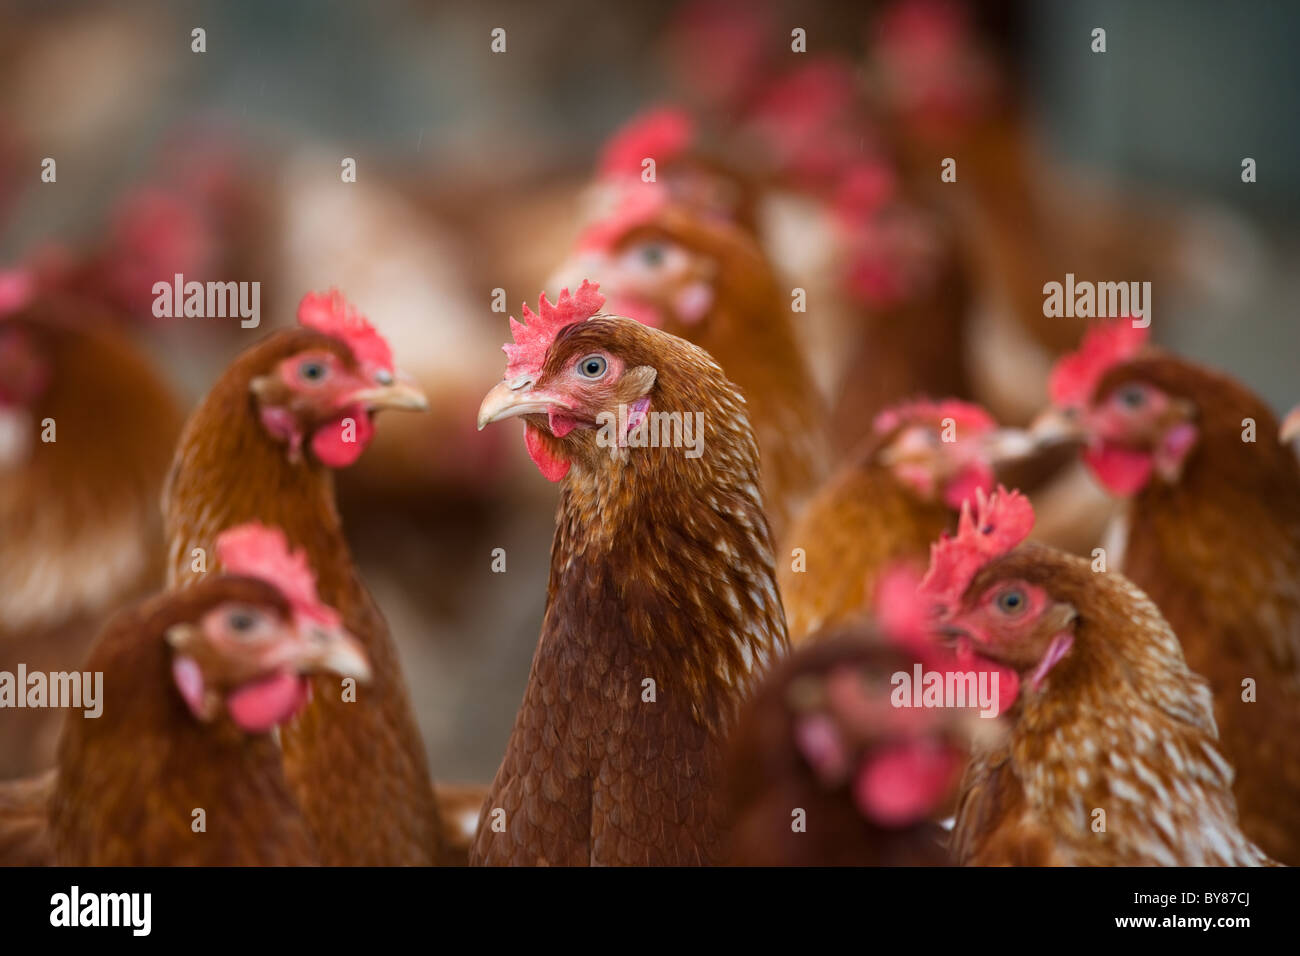 Free-range troupeau de poulet bio Banque D'Images